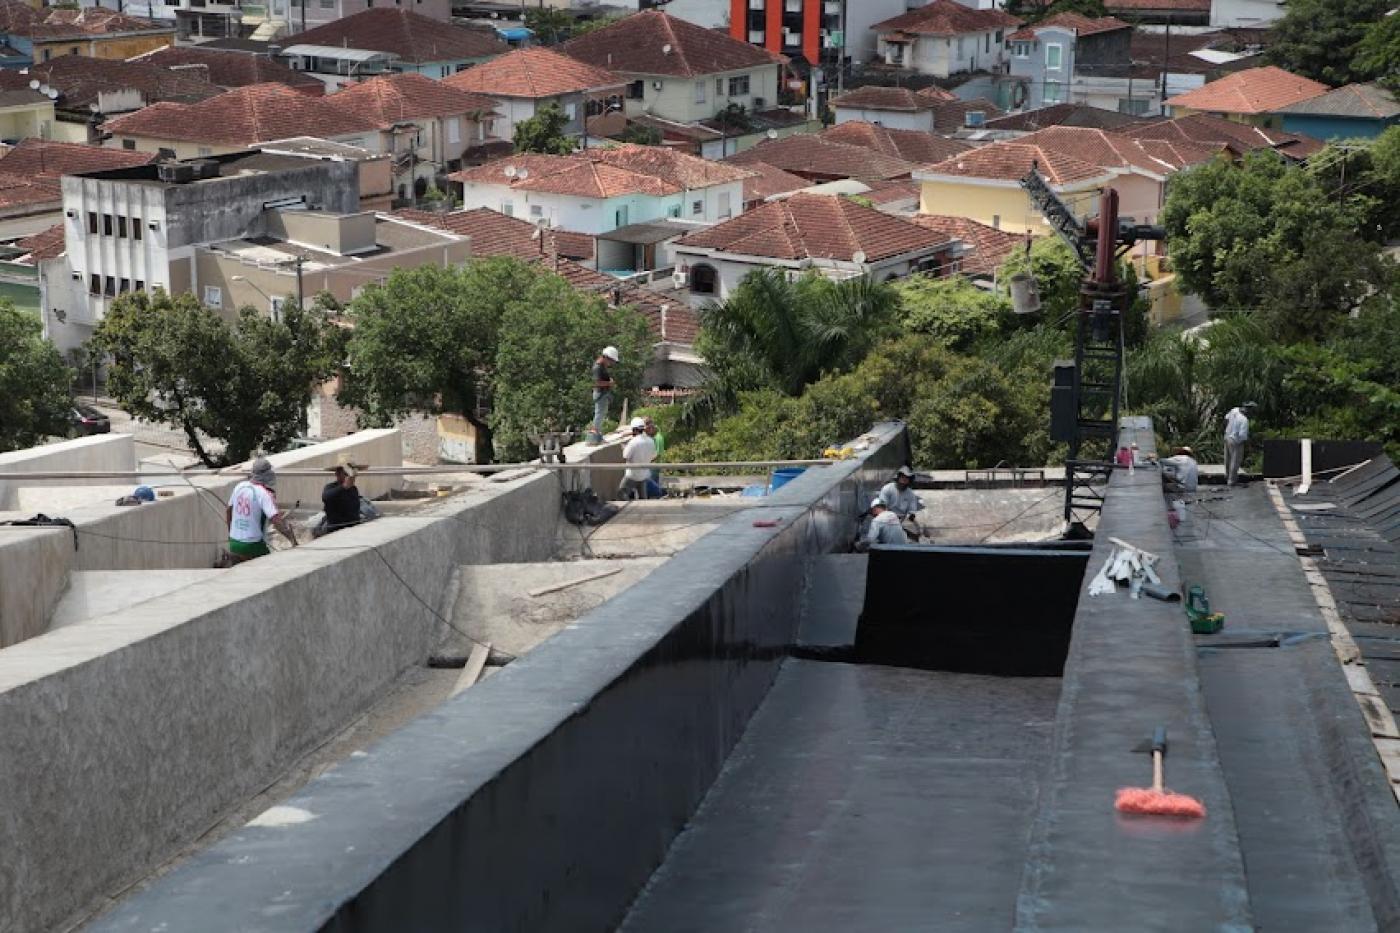 cobertura do teatro em obras, com homens trabalhando ao fundo e vista de prédios da cidade abaixo. #paratodosverem